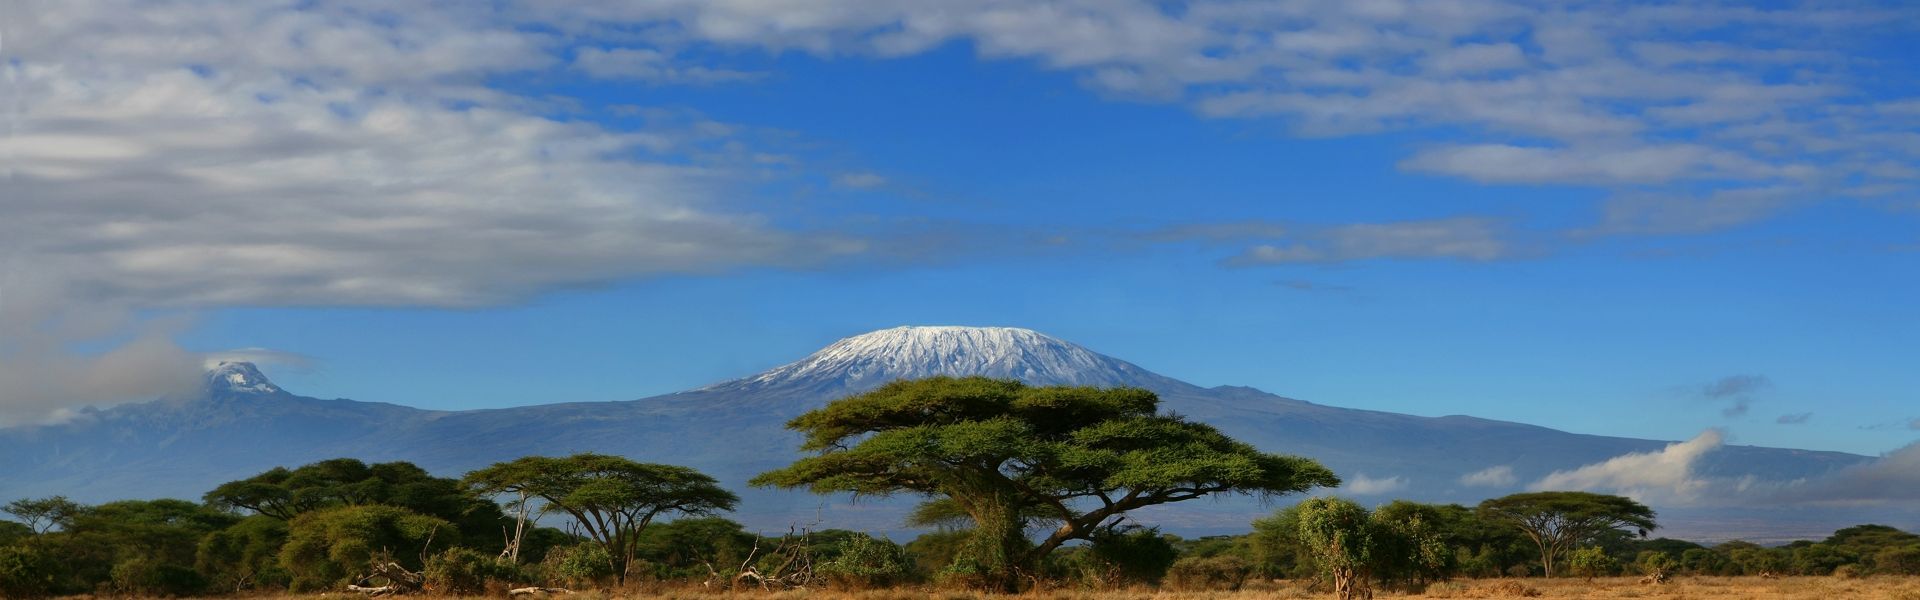 Kilimanjaro The Long Way